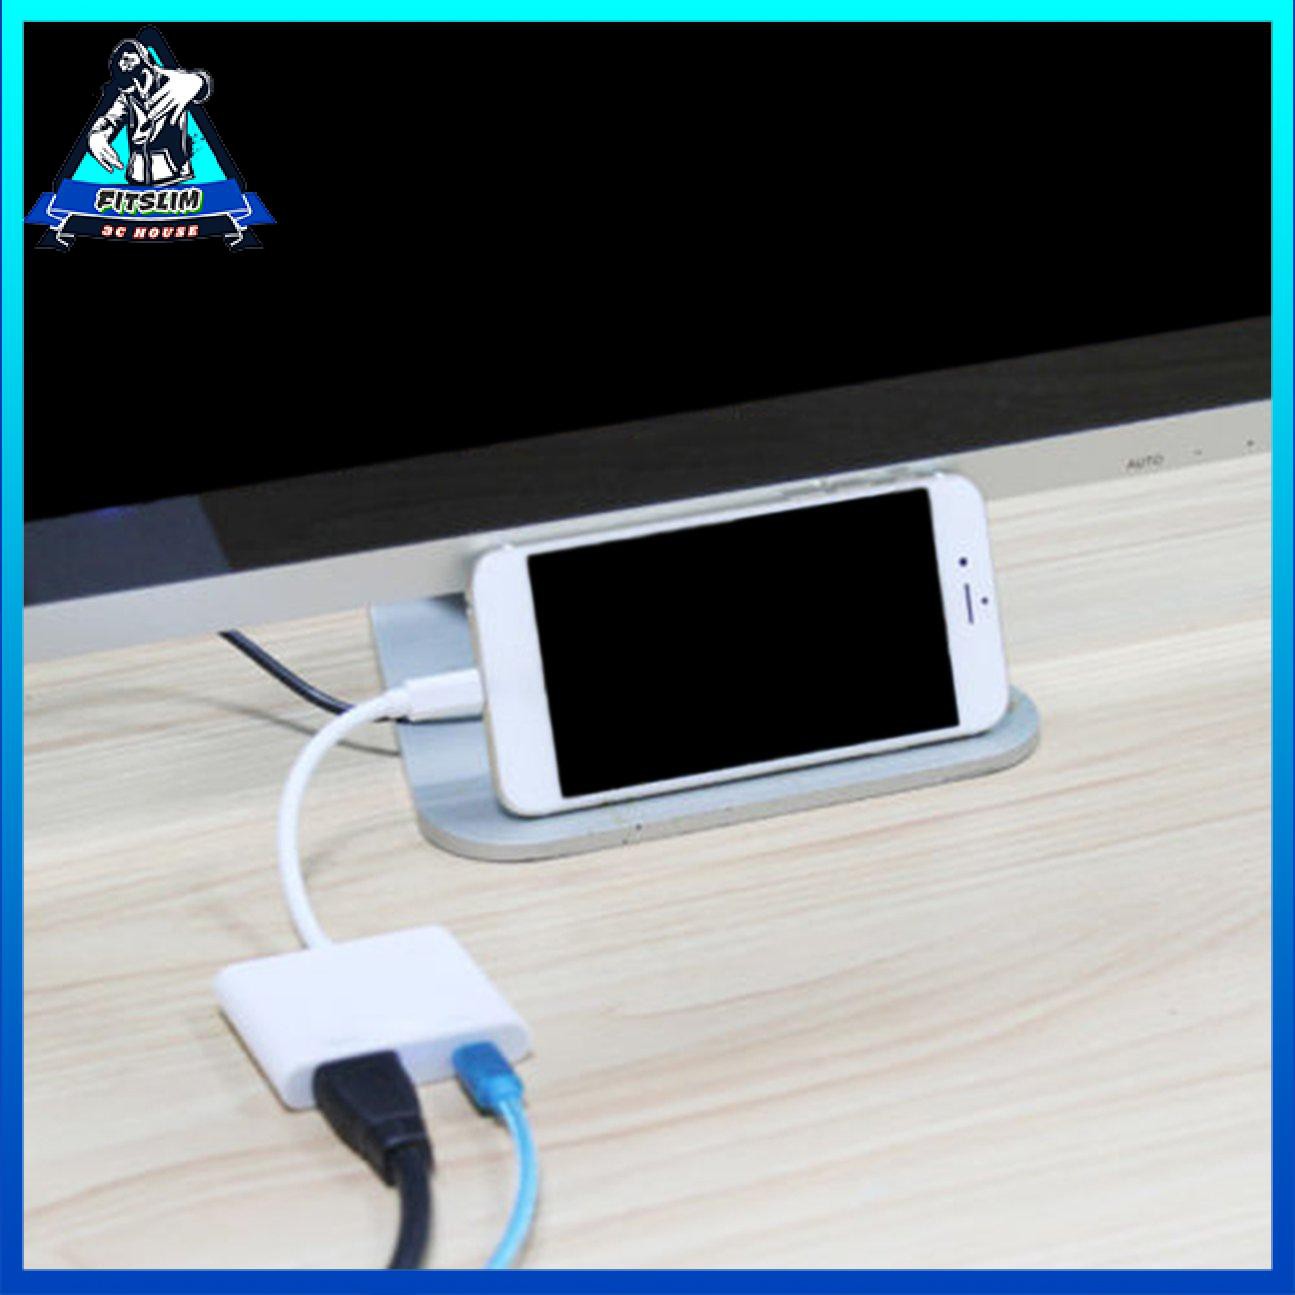 Cáp chuyển đổi Lightning sang HDMI Truyền hình kỹ thuật số AV Plug & Play cho iPhone